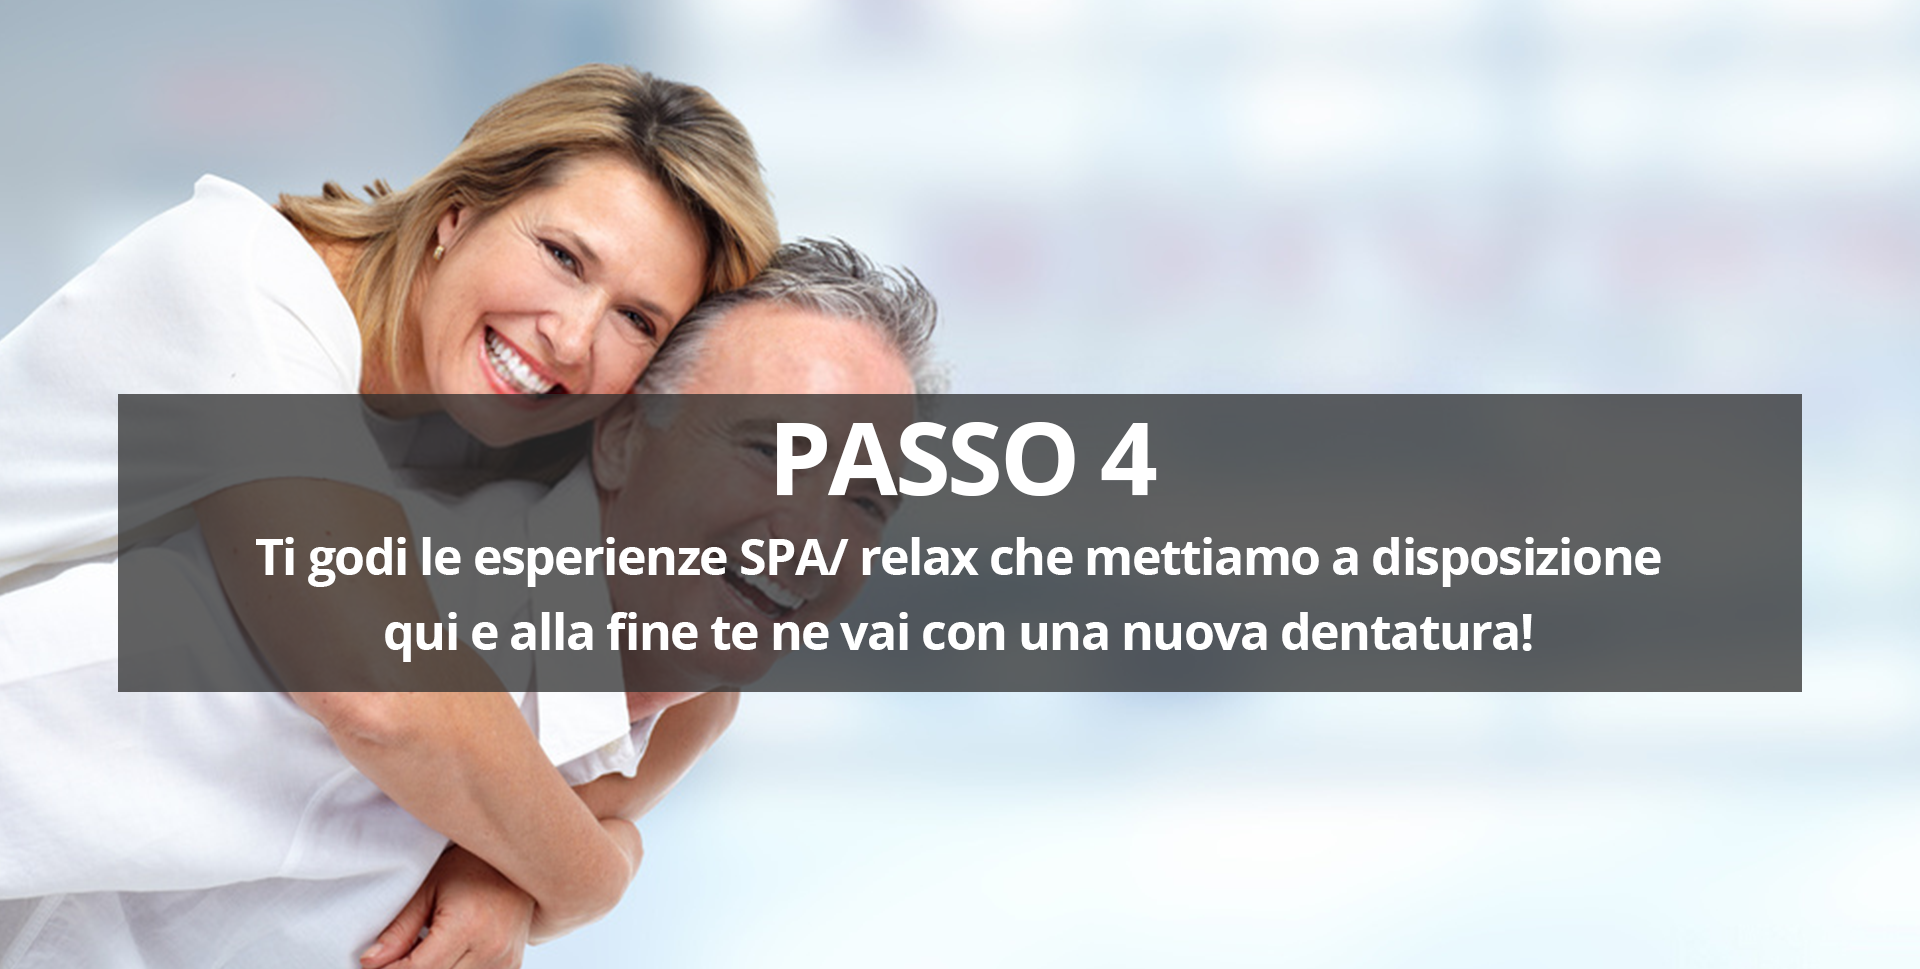 Passo 4 - Ti godi le esperienze SPA relax impianto dentale dentista bucarest romania turismo dentale d